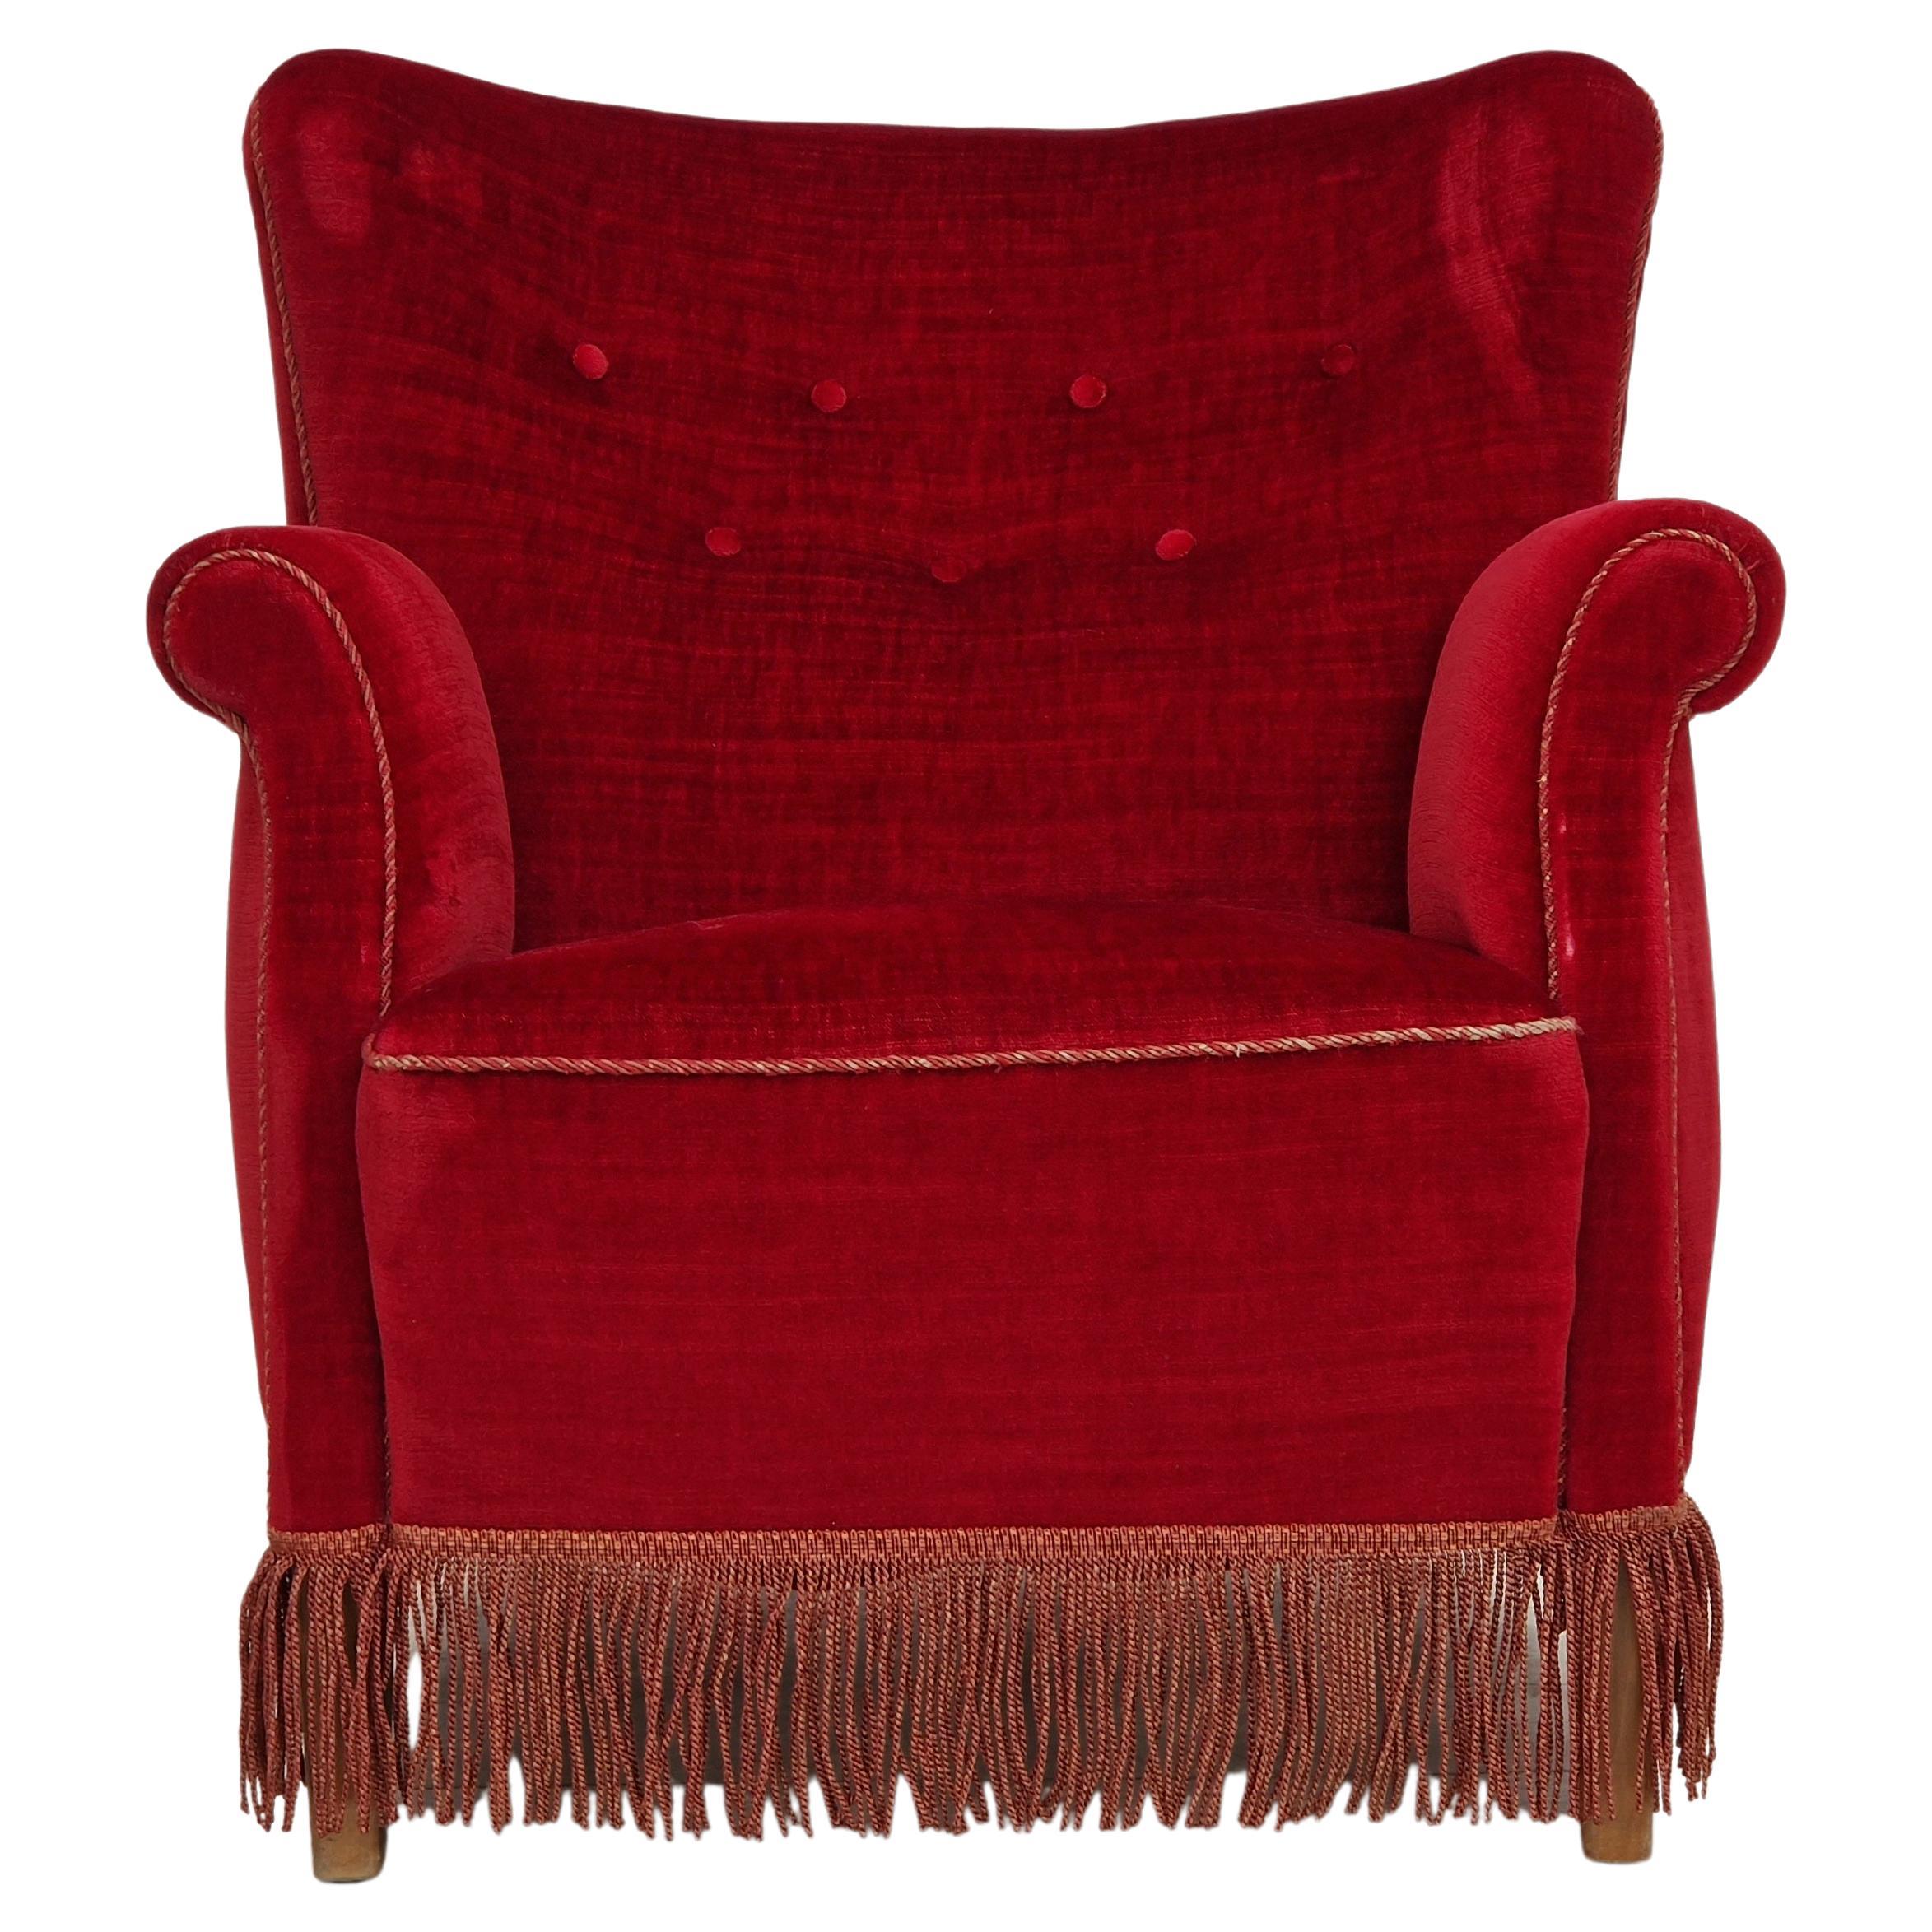 1960s, Danish Vintage Armchair in Cherry-Red Velvet